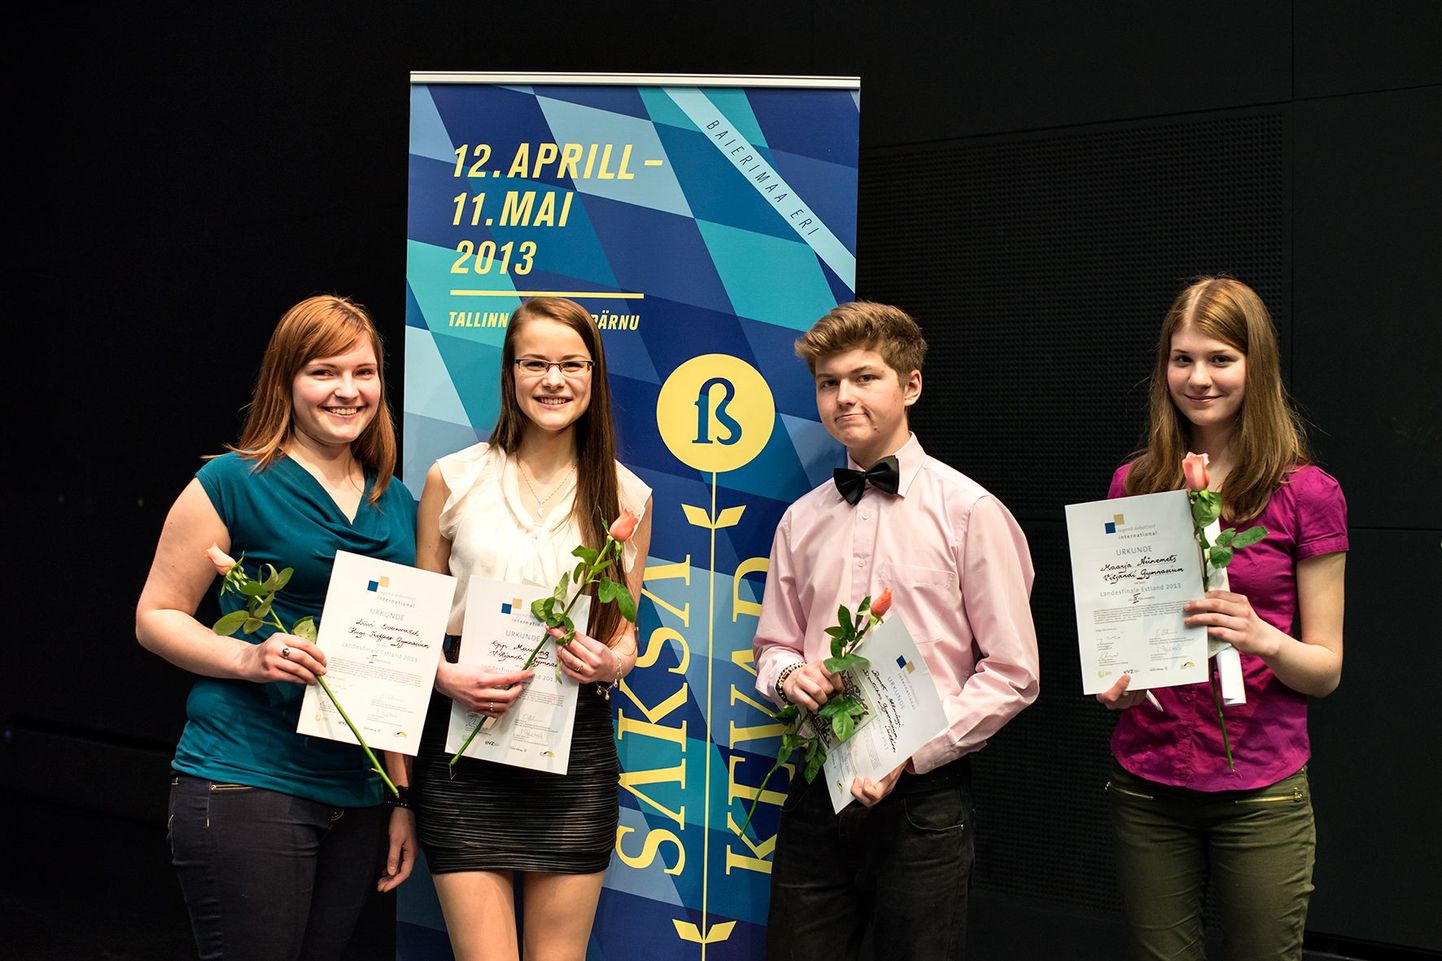 Viljandi gümnaasiumi õpilane Epp Mauring (vasakult teine) sai üle-eestilisel saksakeelsel väitlusvõistlusel teise koha. Pildil on tänavuse konkursi neli finalisti.